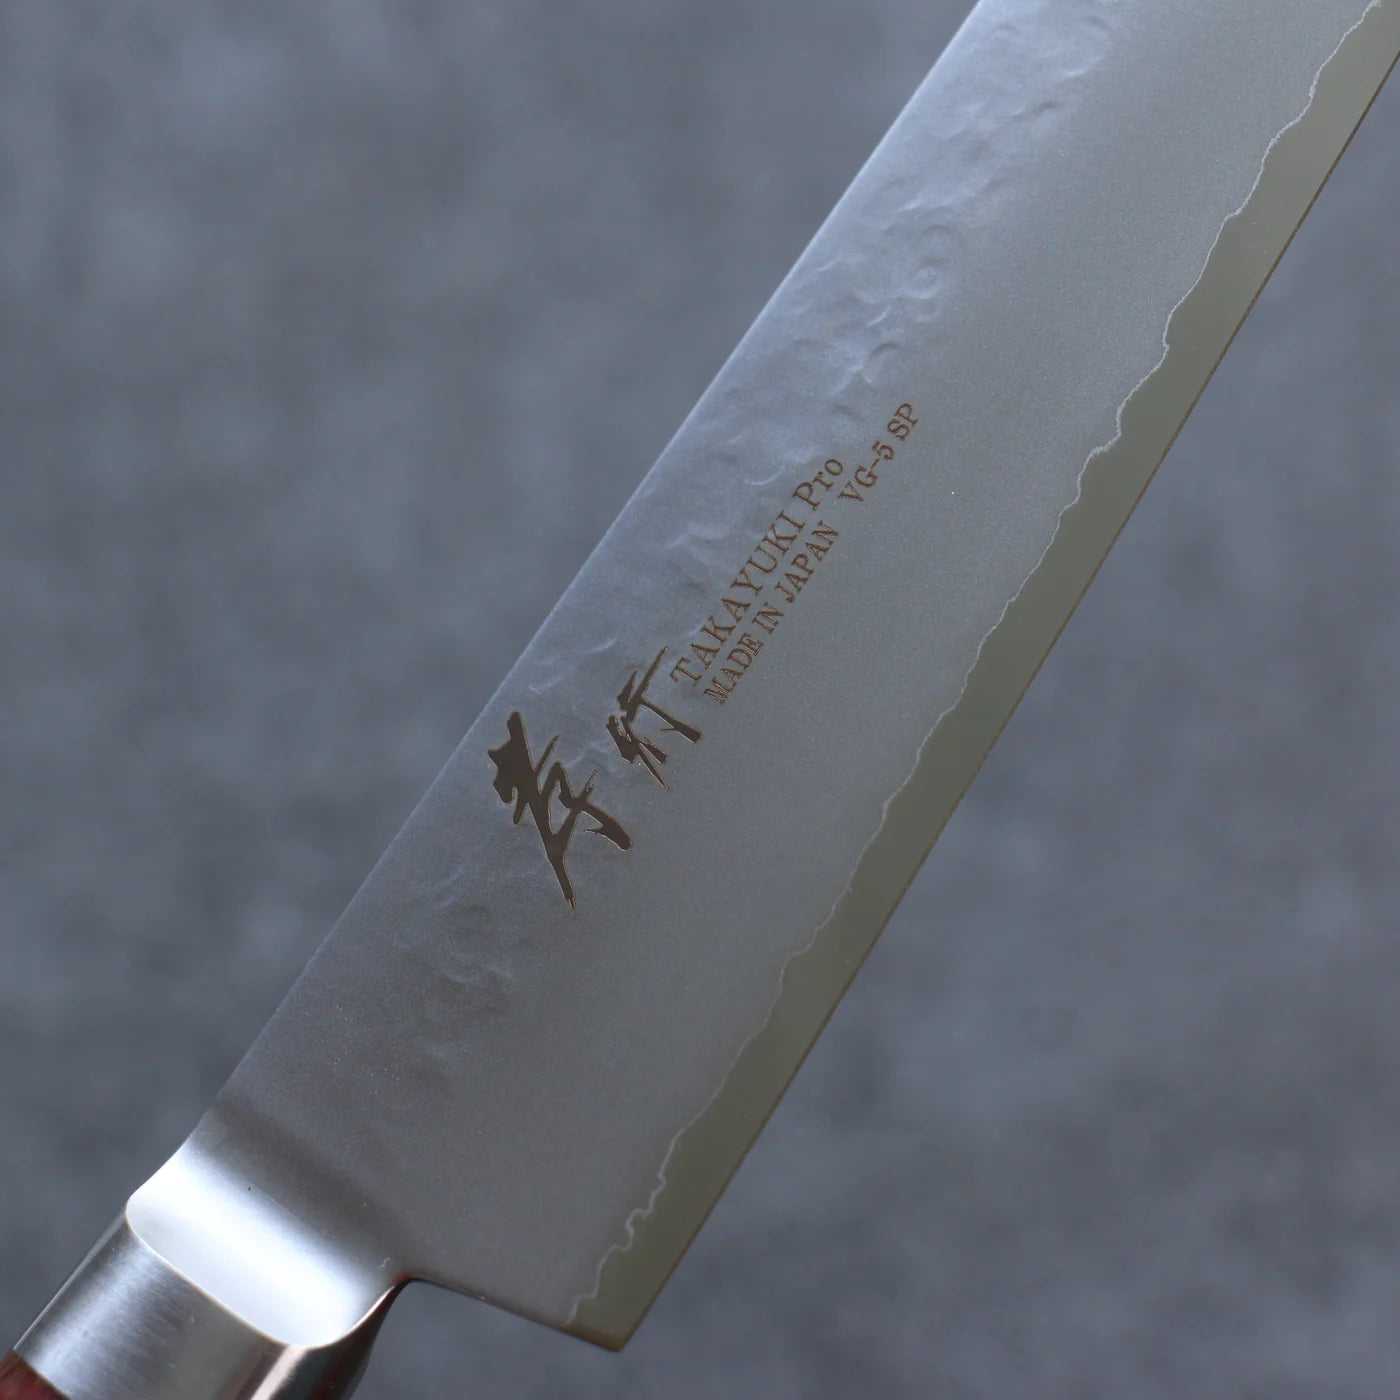 Japanisches High-End-Messer - Sakai Takayuki Sujihiki, spezielles geripptes Messer, handgeschmiedetes Messer aus VG5-Stahl, 240 mm